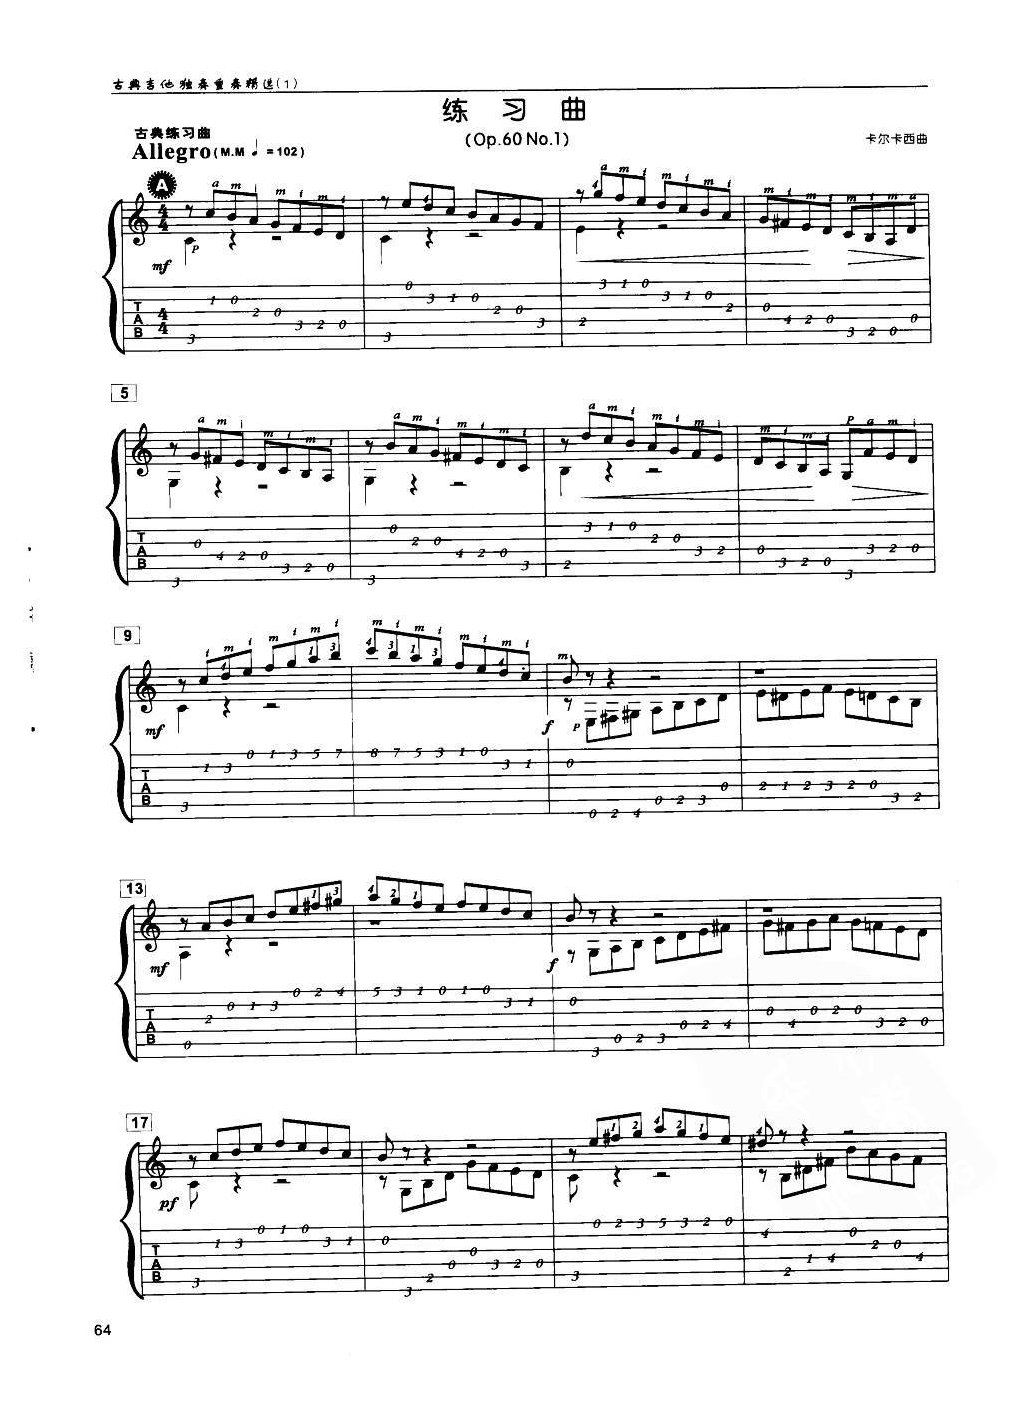 古典吉他练习曲《练习曲(Op.60 No.1)  卡尔卡西曲》